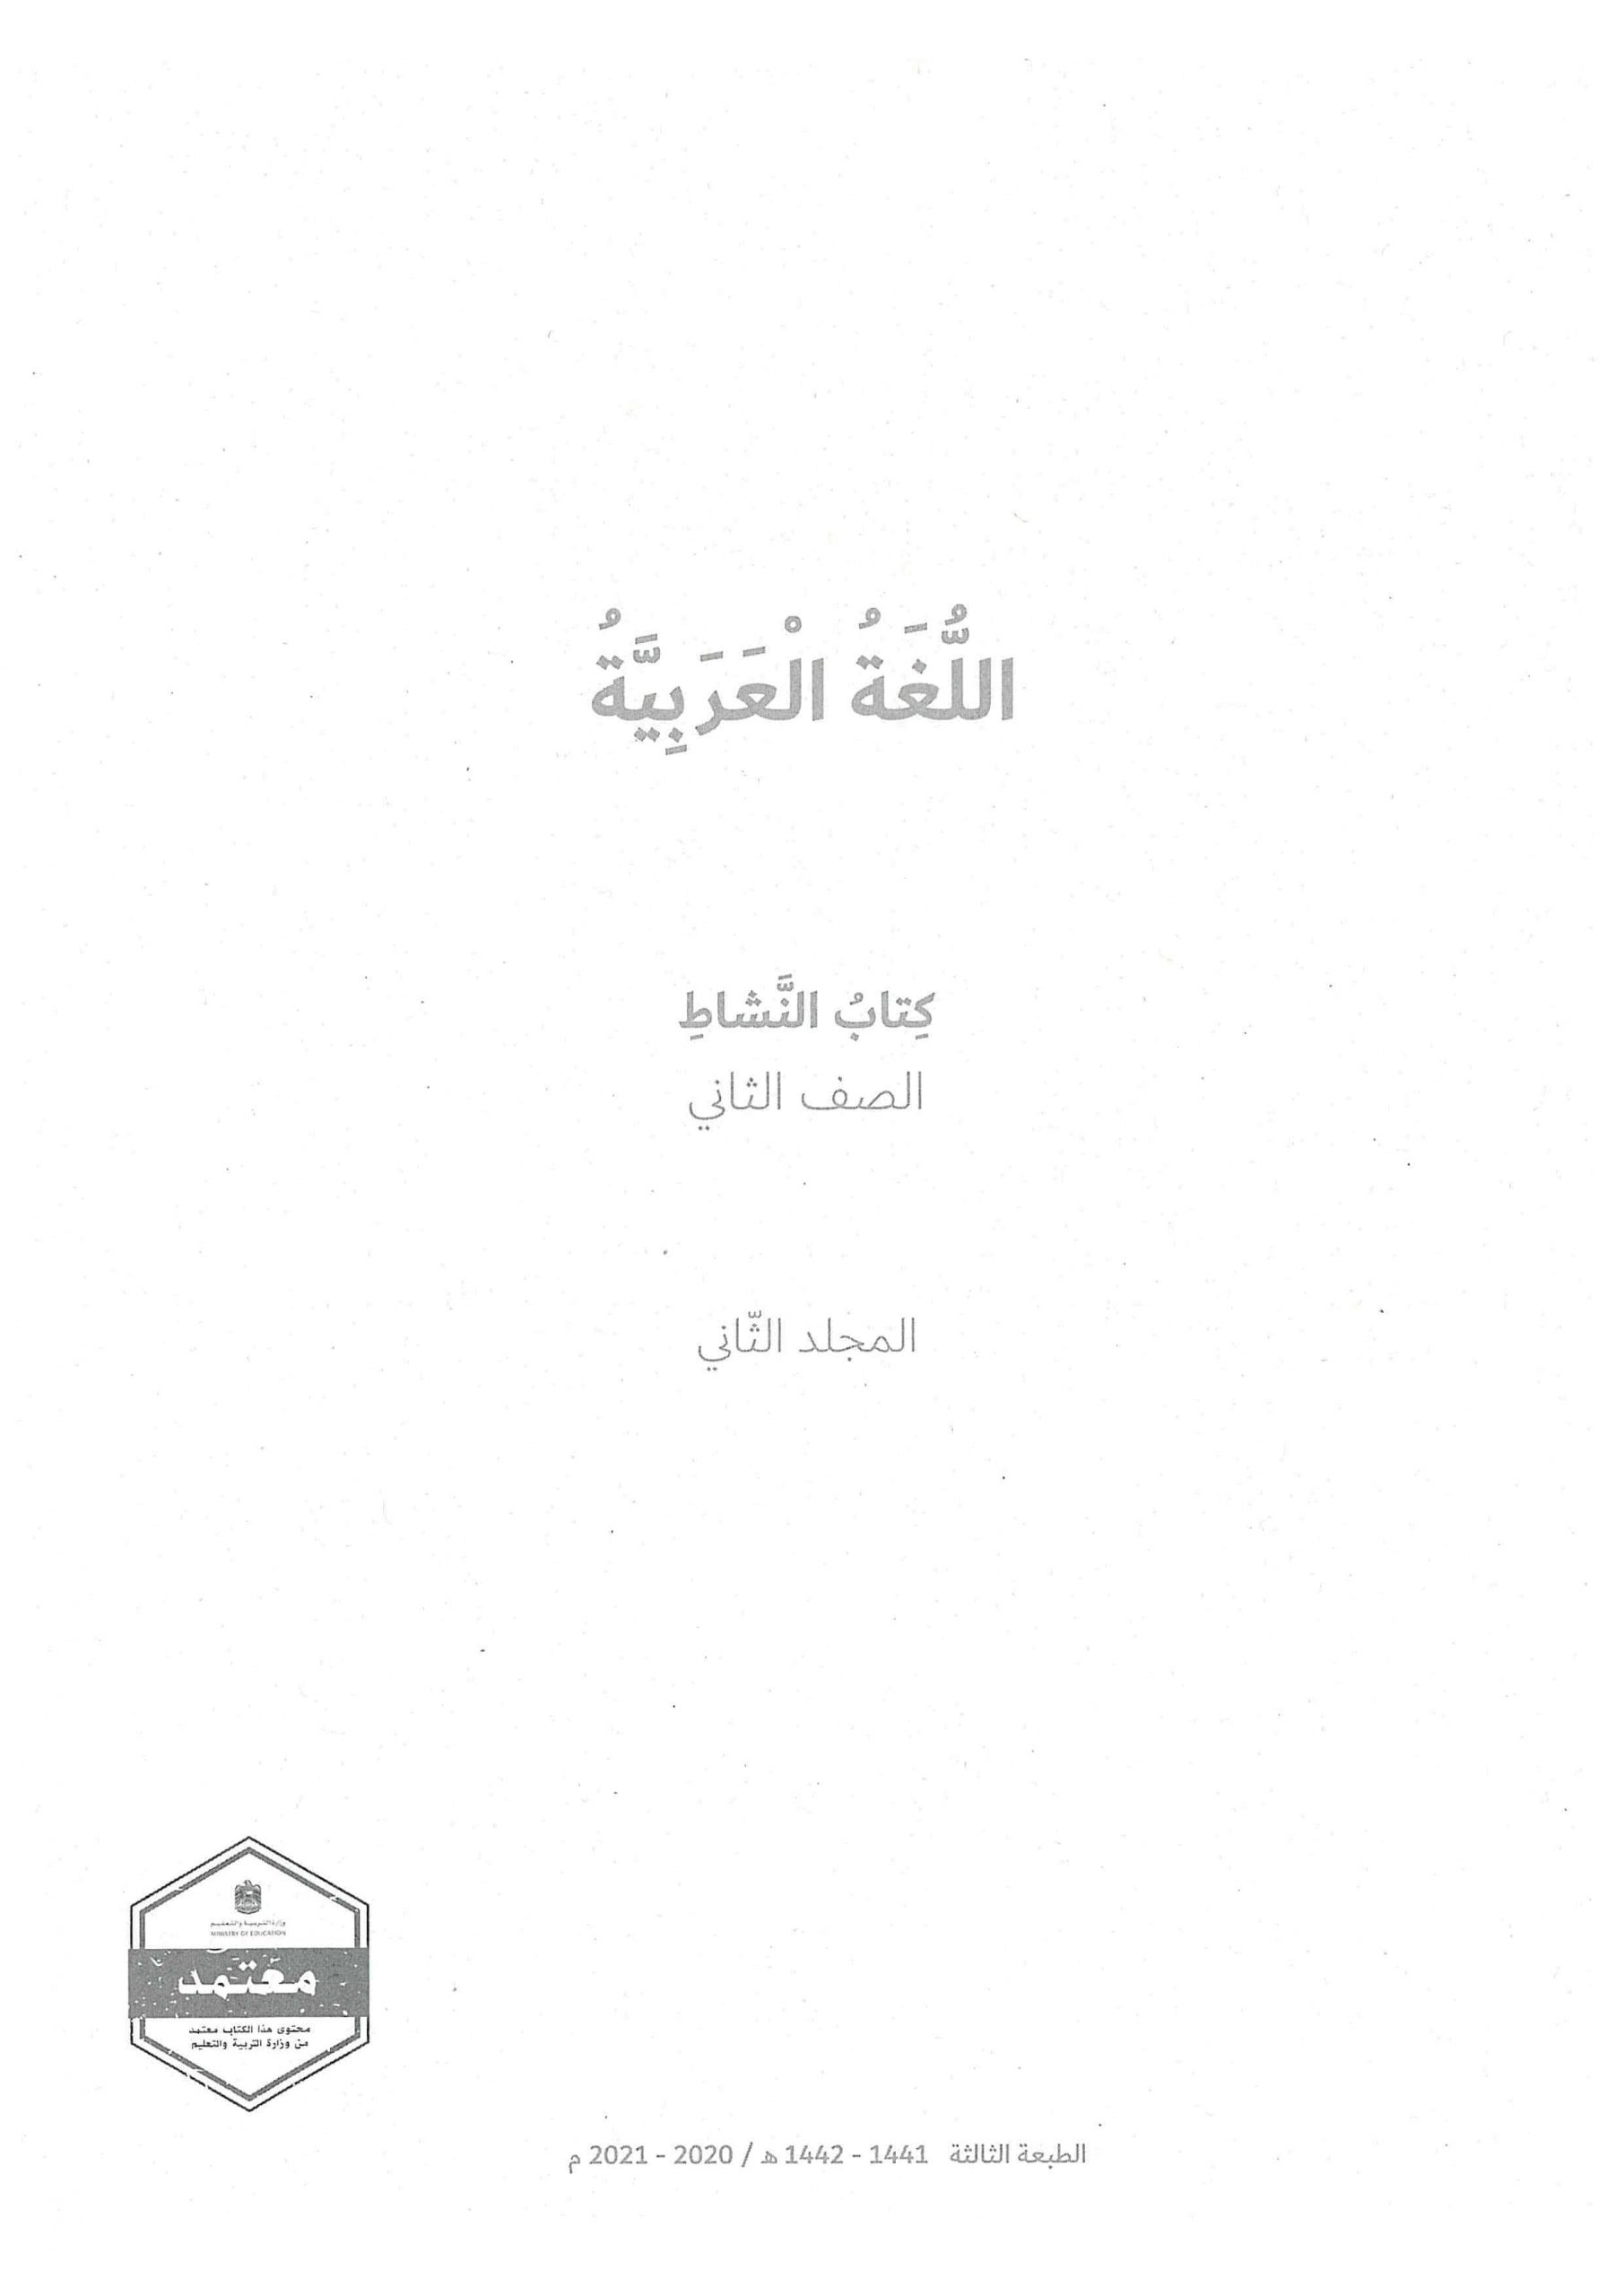 كتاب النشاط الفصل الدراسي الثاني 2020-2021 الصف الثاني مادة اللغة العربية 